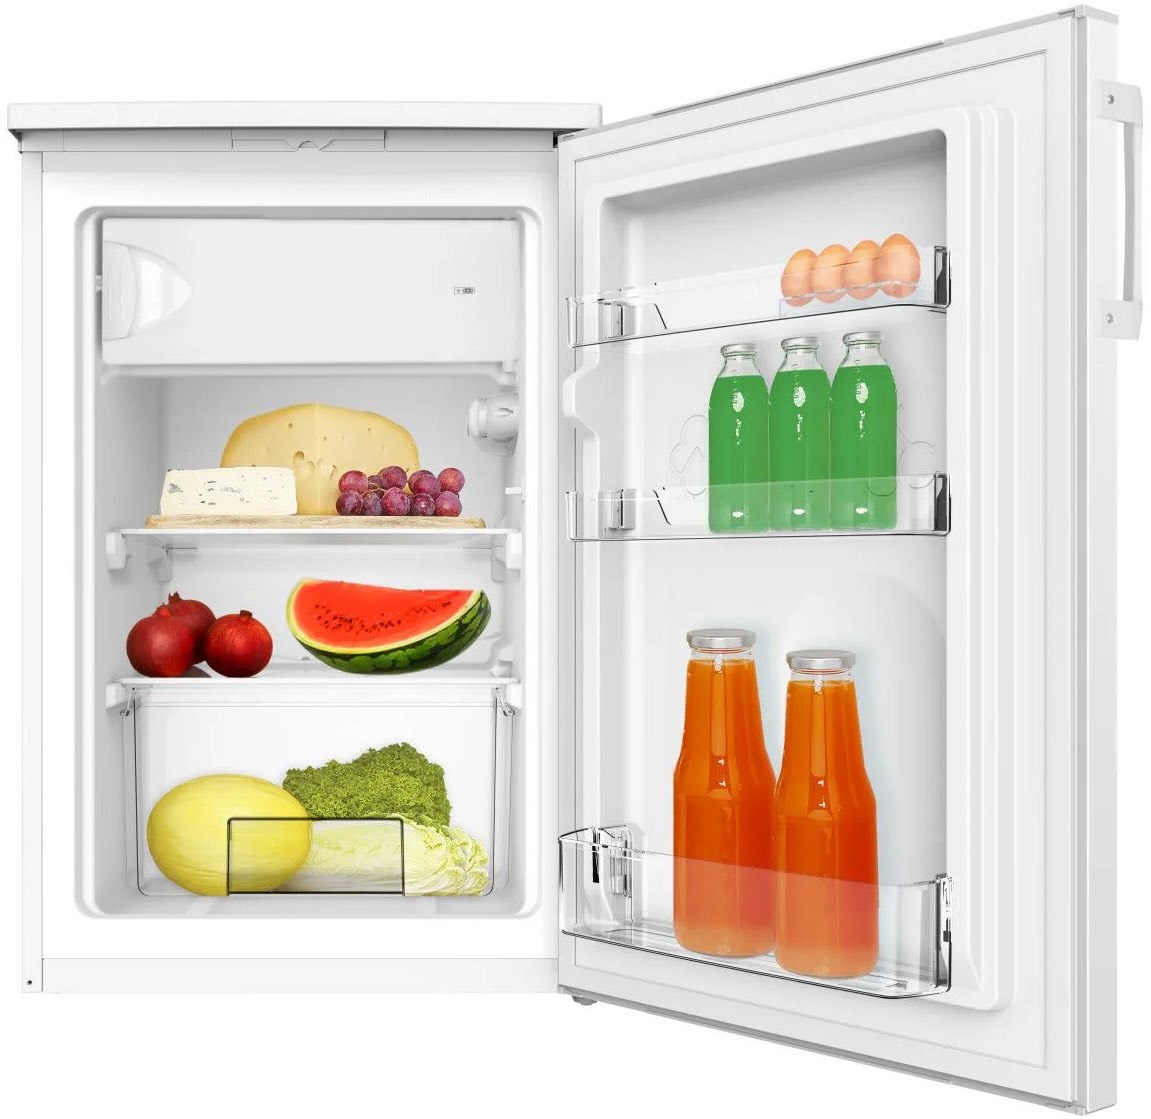 KS 361 300 W Standkühlschrank mit Gefrierfach weiß / C von Amica